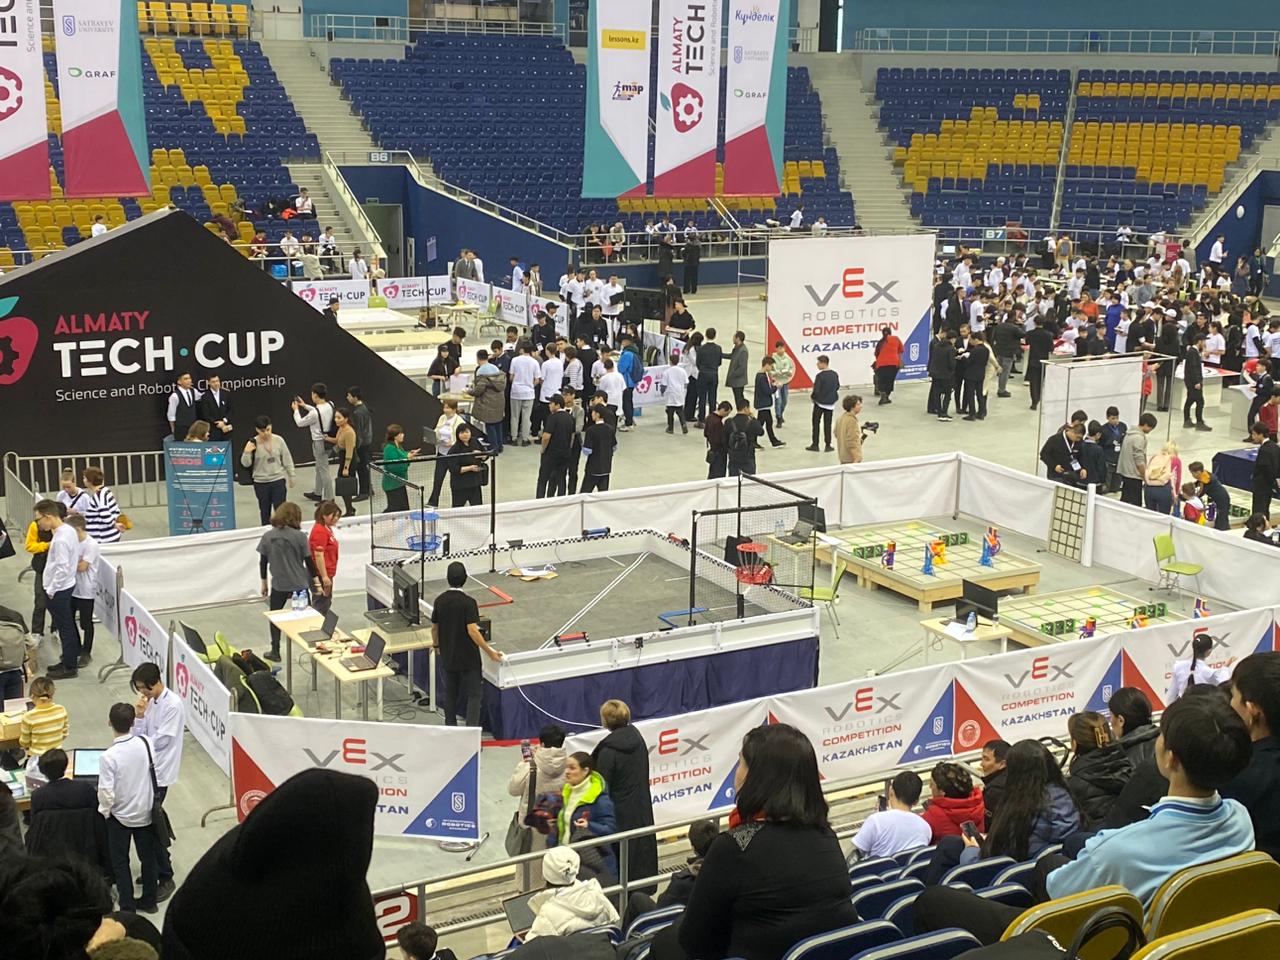 Алматы қаласы әкімінің кубогы үшін робототехника және инновациялық технологиялар бойынша чемпионат 21-22 желтоқсан аралығында өткізілді